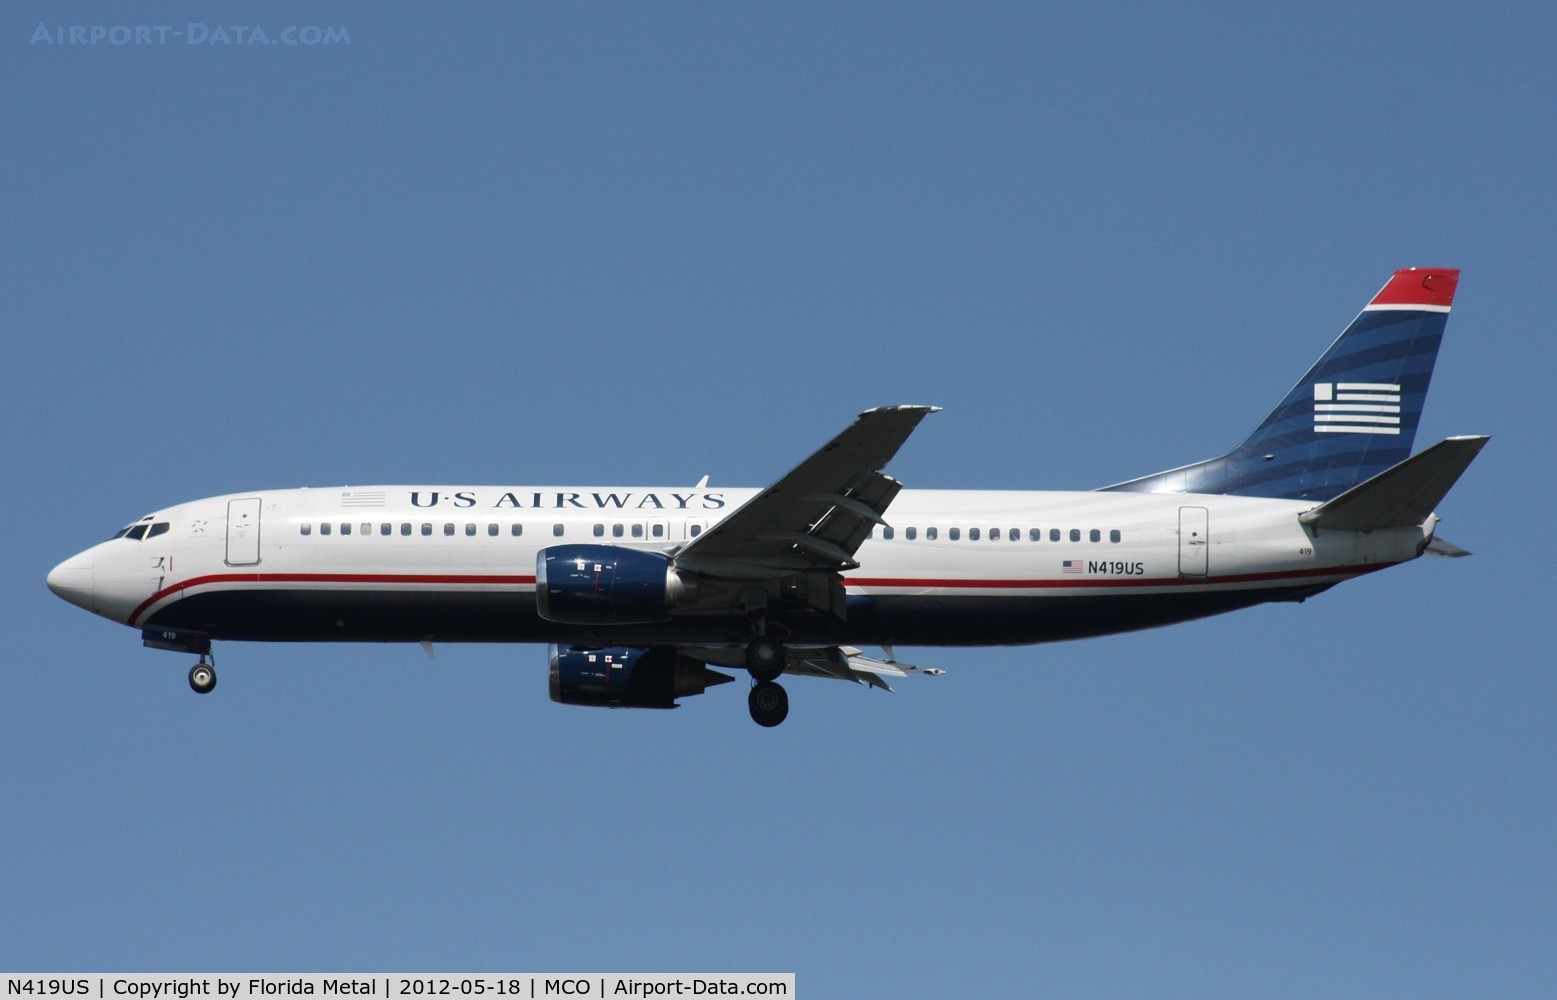 N419US, 1989 Boeing 737-401 C/N 23986, US Airways 737-400